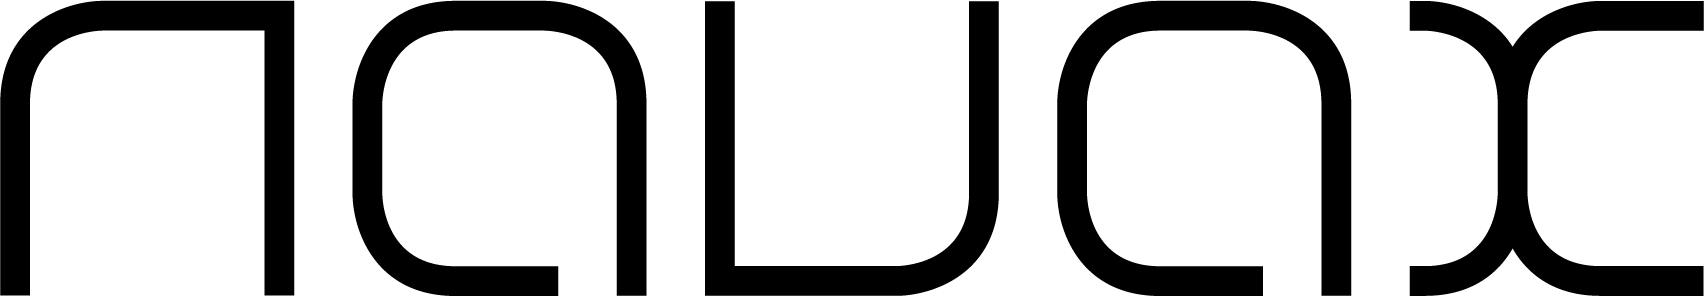 Navax Logo2